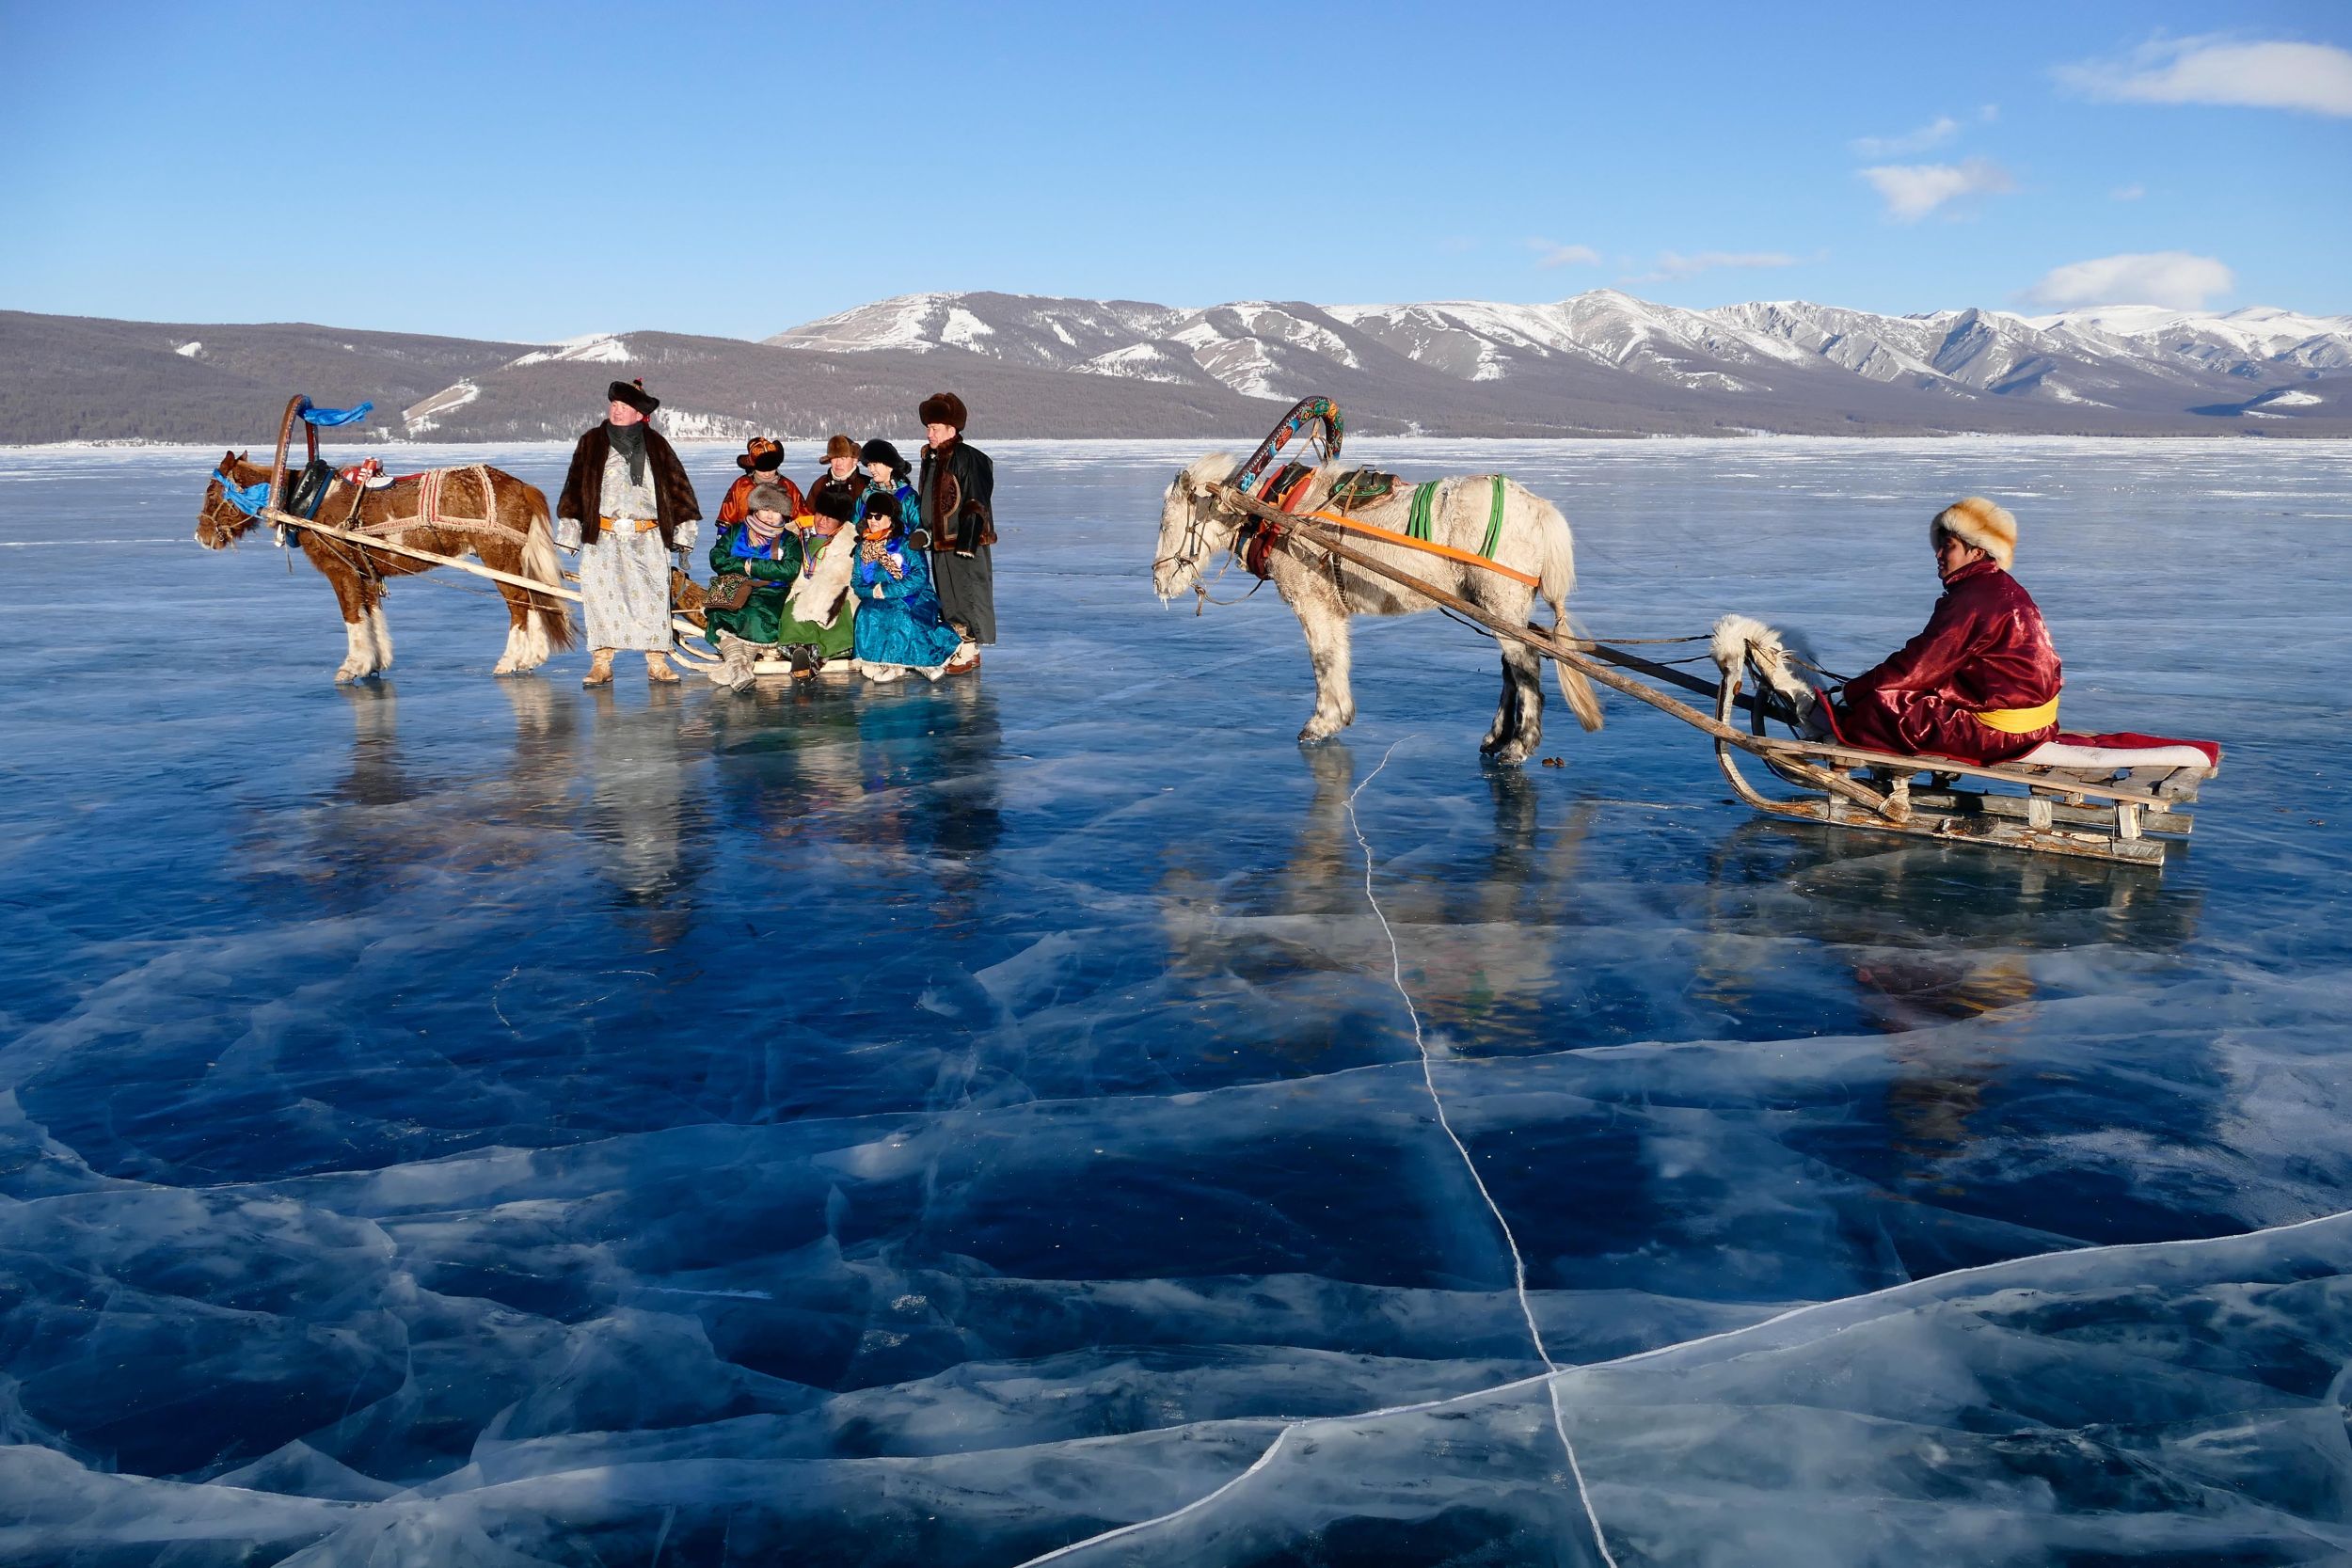 Festival cdes glaces sur le lac Khovsgol, costumes Mongol.